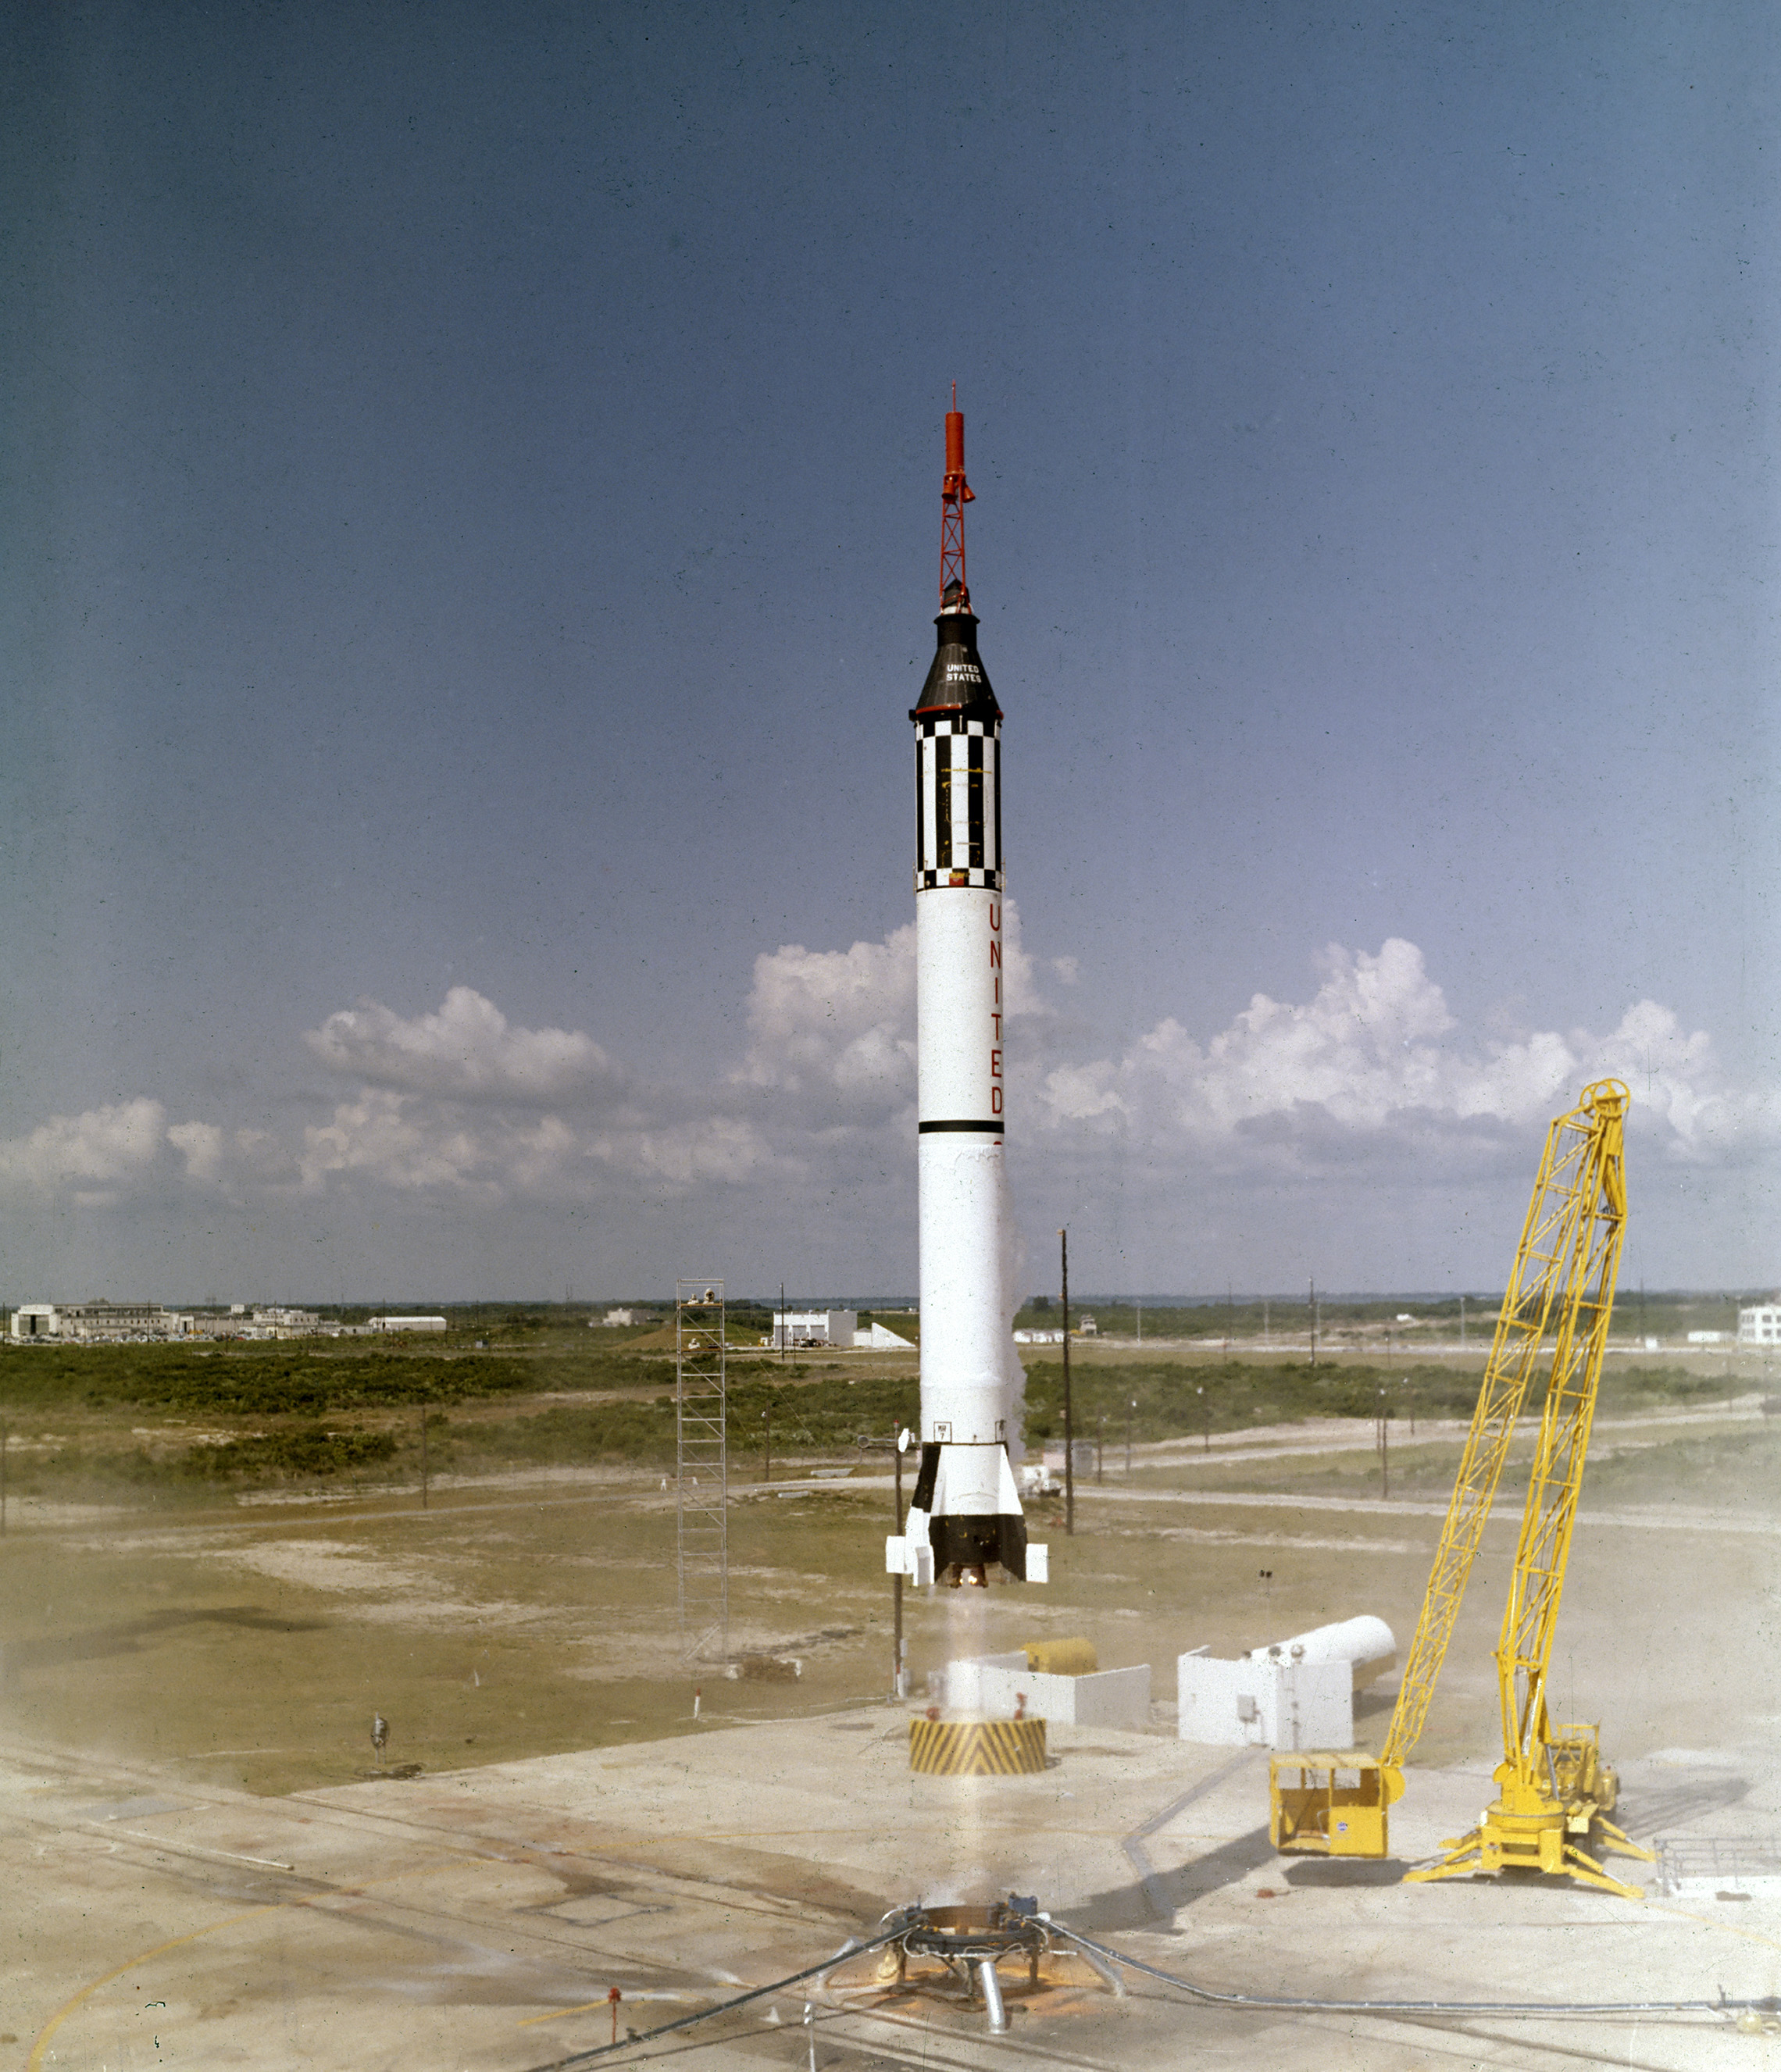 űrhajós Alan B. Shepard, Jr.felemeli a Szabadság 7 Mercury űrhajó május 5, 1961. A Mercury-Redstone (MR-3) jármű harmadik repülése, amelyet Dr. Wernher von Braun és az alabamai Huntsille-I rakétacsapat fejlesztett ki, az Egyesült Államok első emberes űrmissziója volt. A 15 perces szuborbitális repülés során Shepard elérte a 115 mérföld magasságot,és 302 mérföldet tett meg. (NASA)